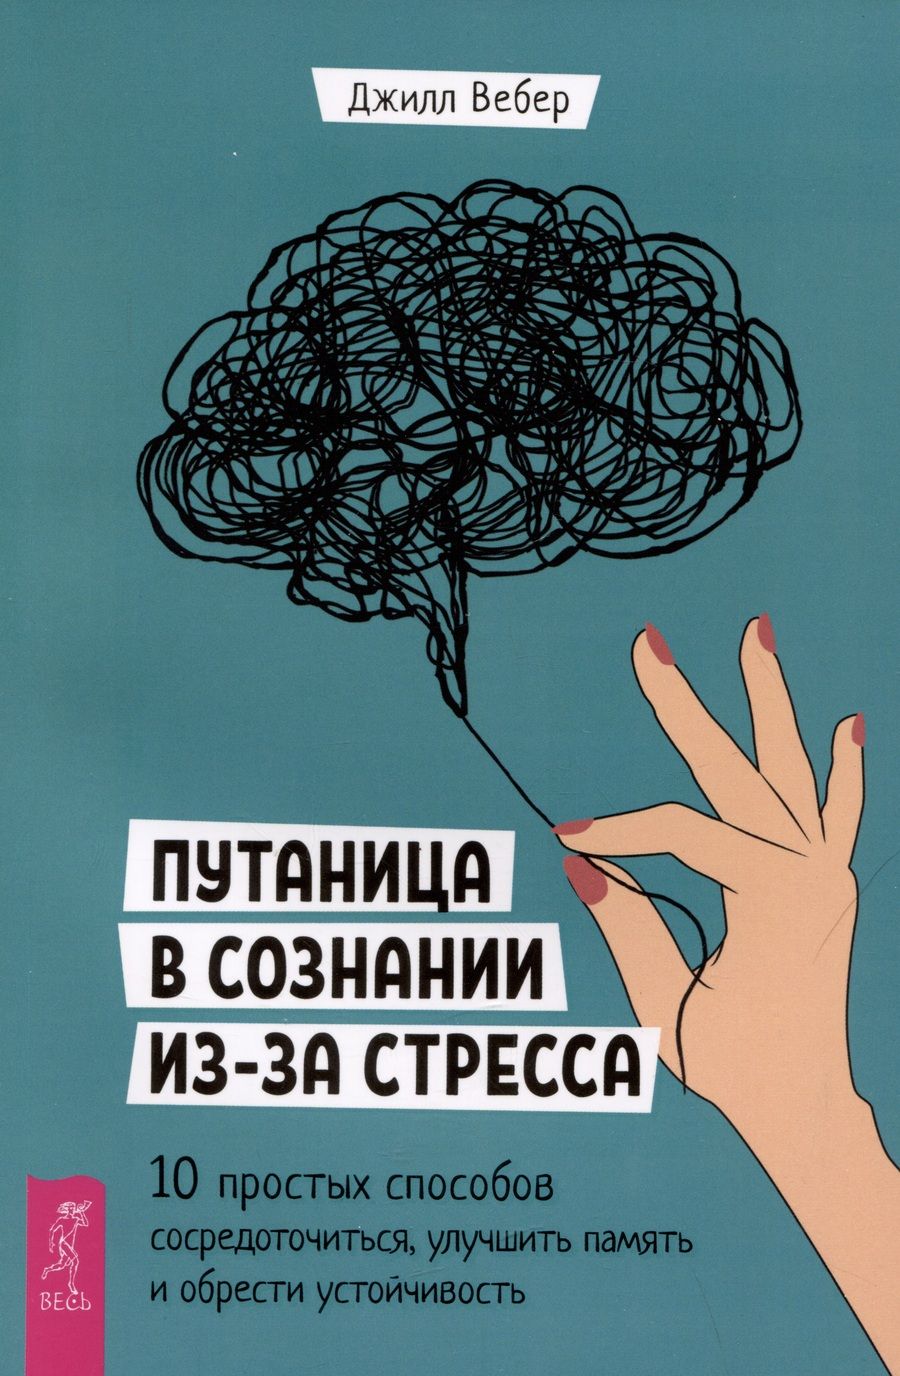 Обложка книги "Вебер: Путаница в сознании из-за стресса. 10 простых способов сосредоточиться и обрести устойчивость"